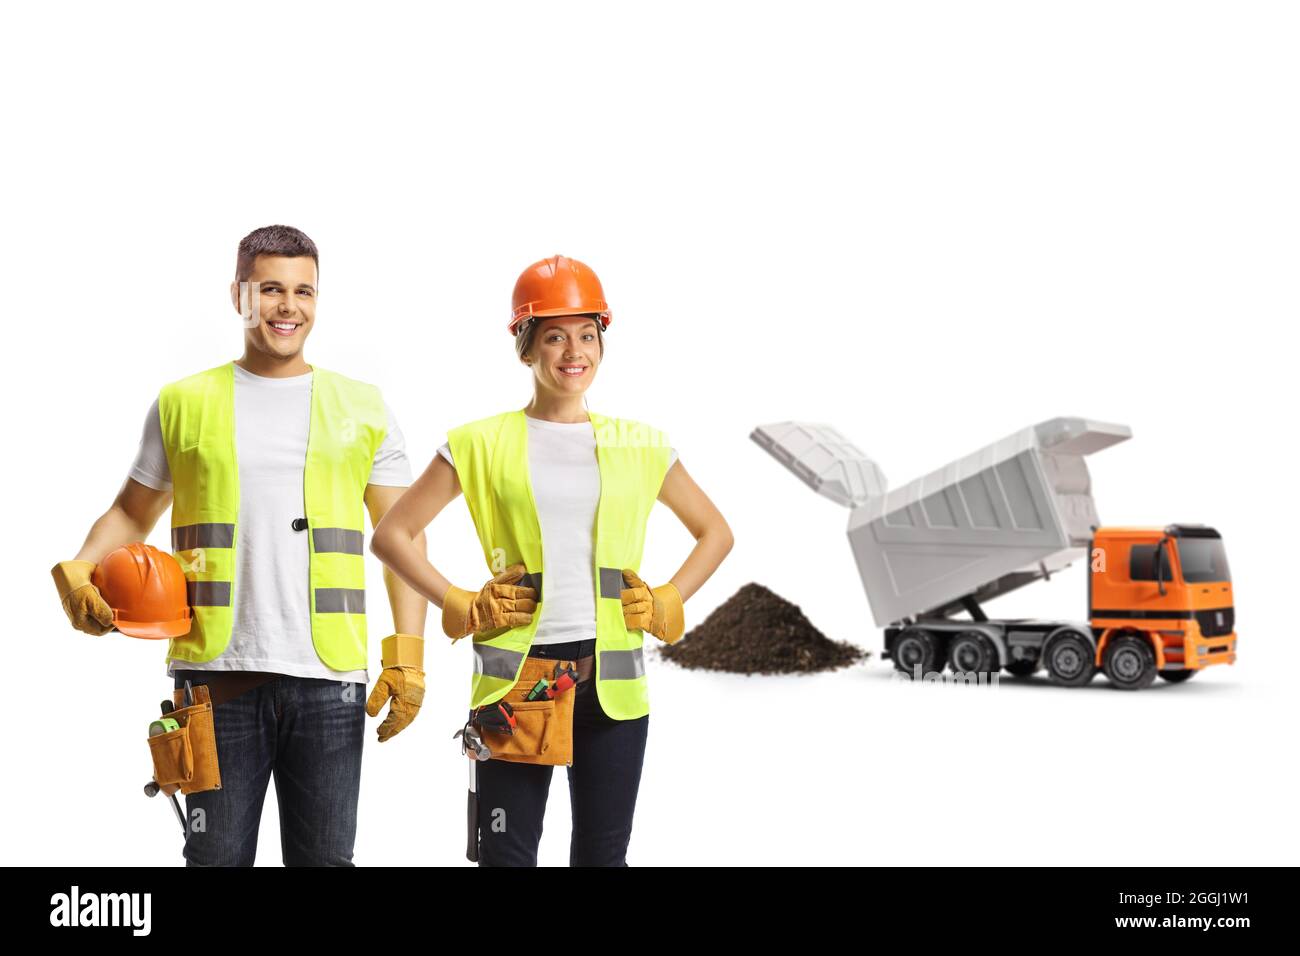 Lavoratori edili di sesso maschile e femminile che indossano i cappelli in un sito con un camion di scarico isolato su sfondo bianco Foto Stock